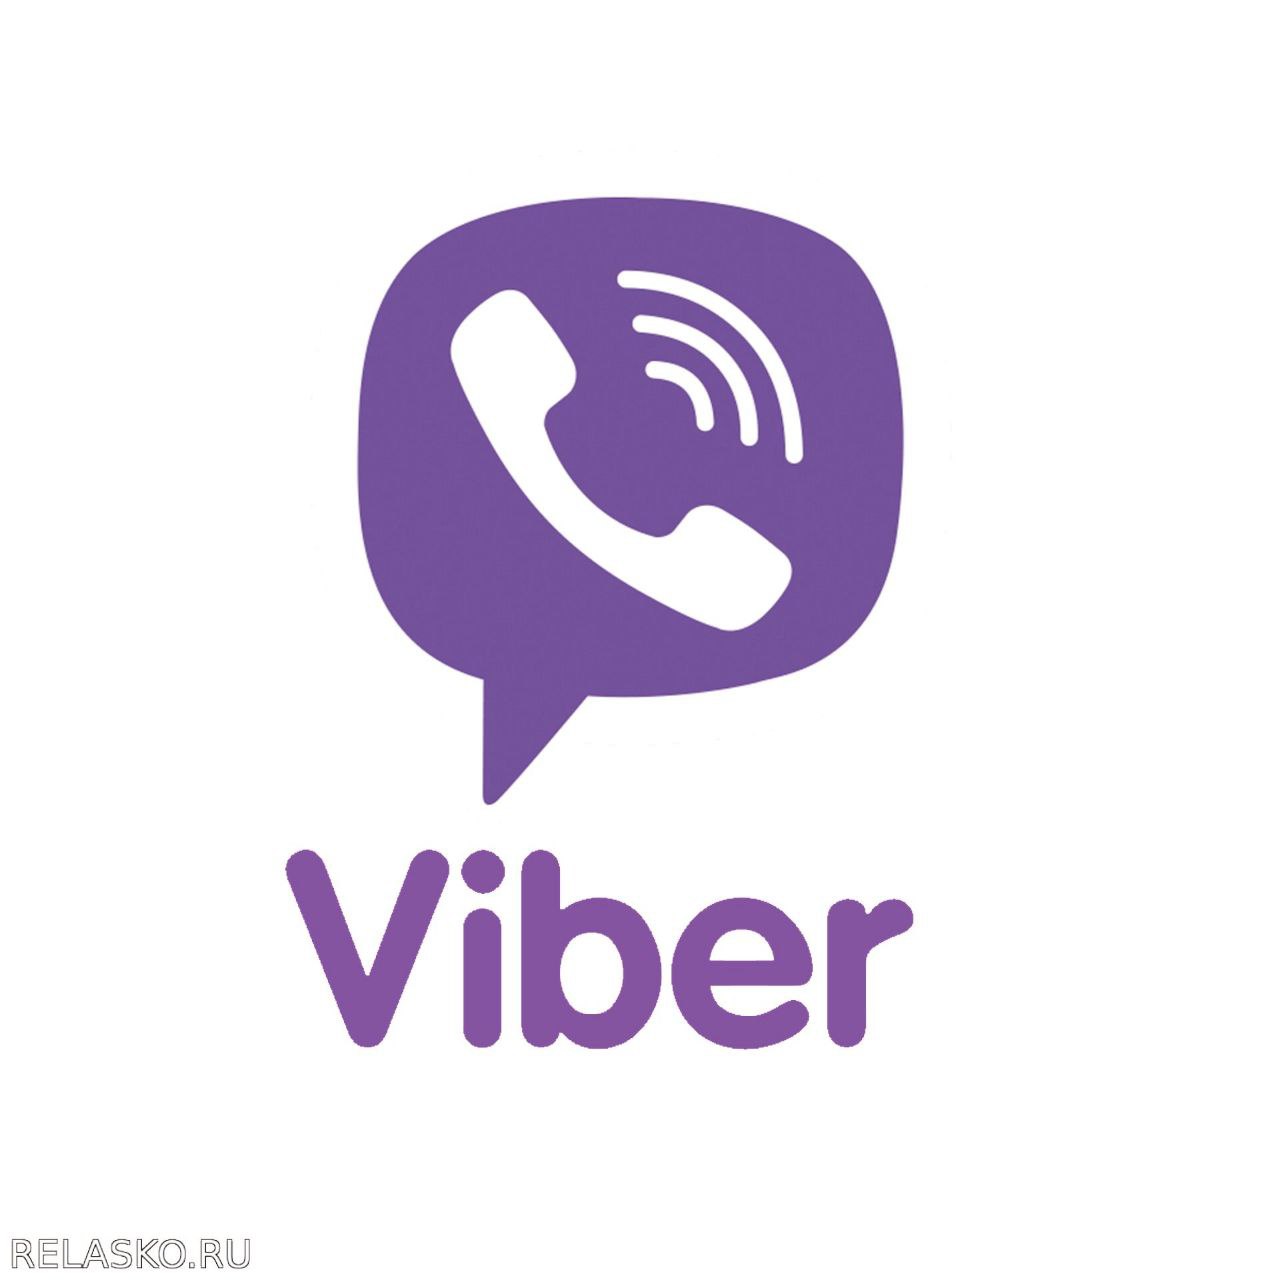 Viber 64 bit. Viber логотип. Икона Viber. Значок вибер на прозрачном фоне. Значок вайбер ватсап.